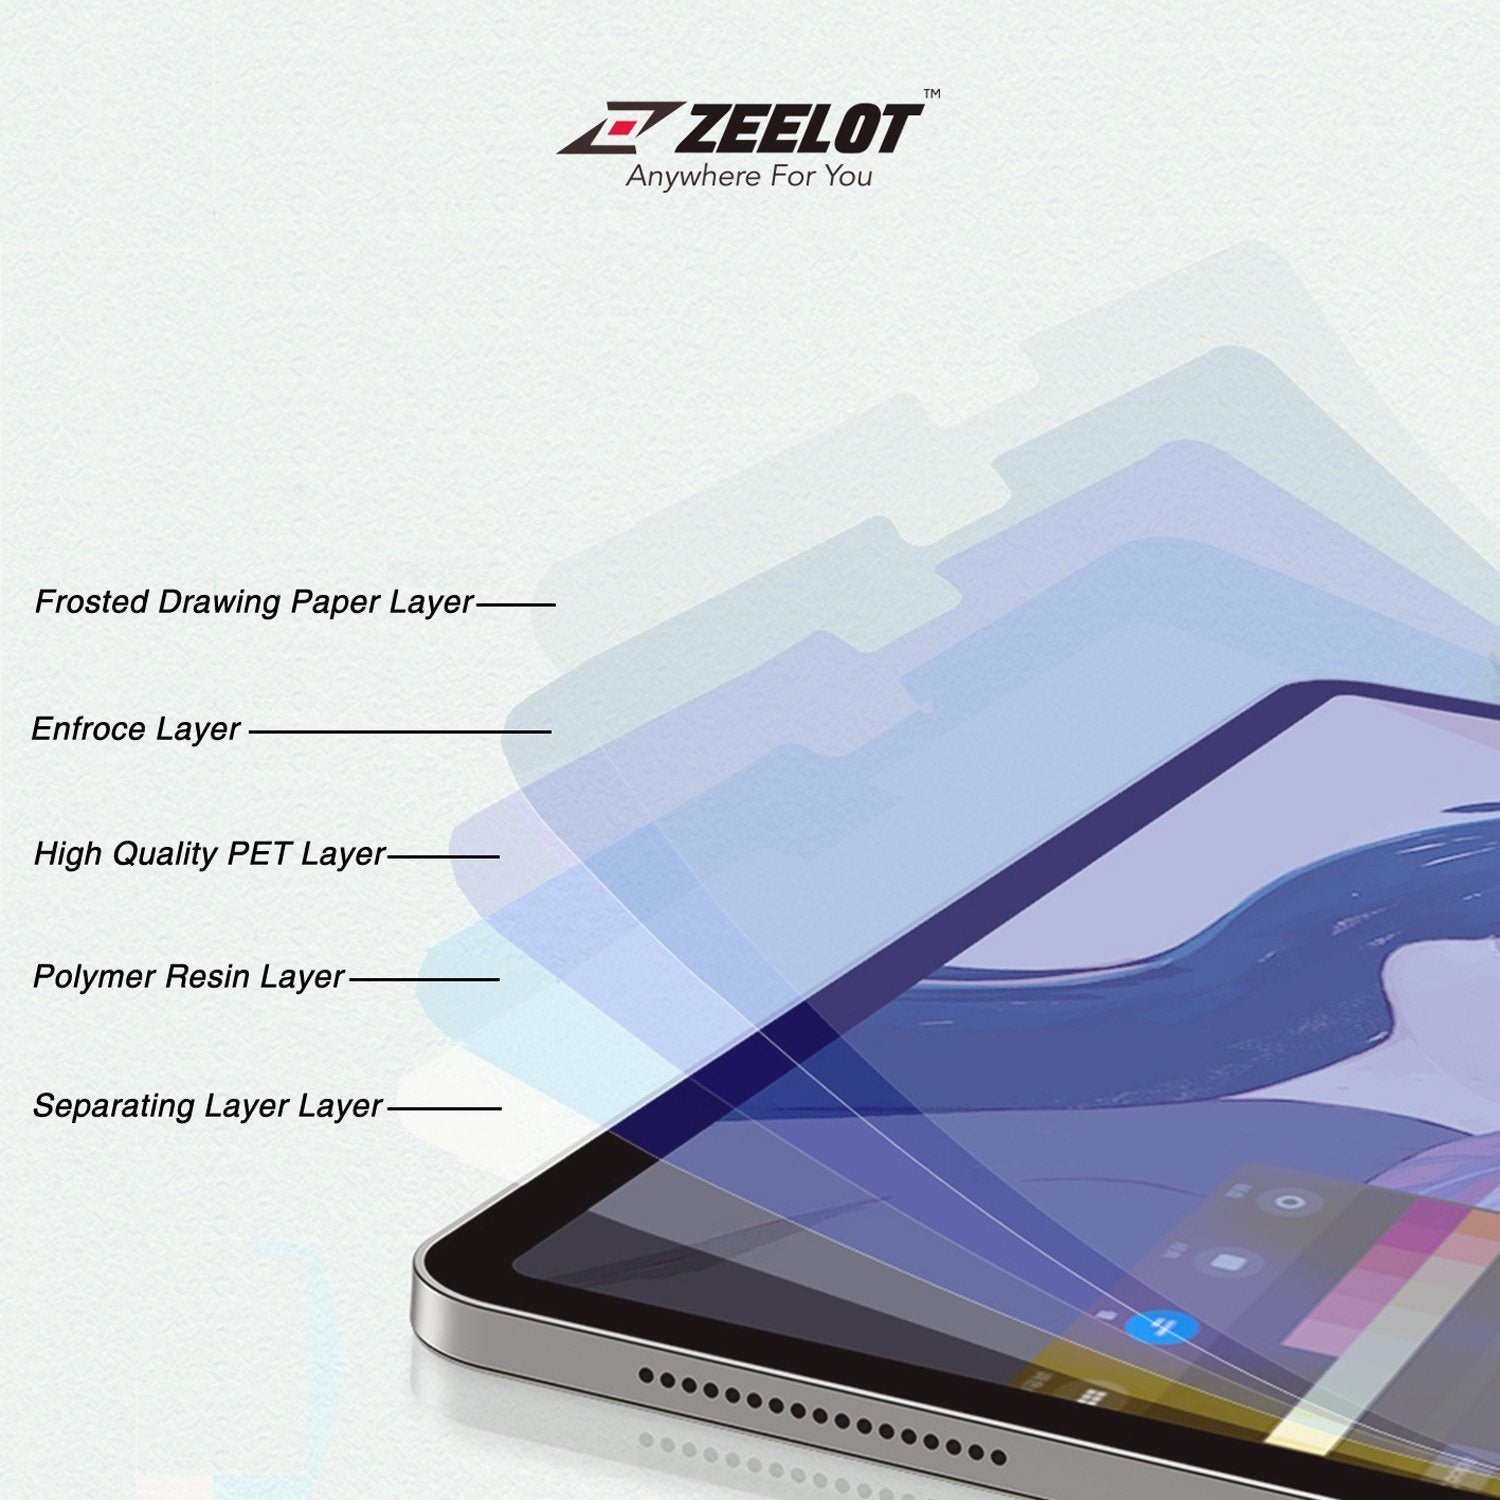 ZEELOT Paper Like Screen Protector for iPad 10.5" (2019/2017), Clear Default ZEELOT 